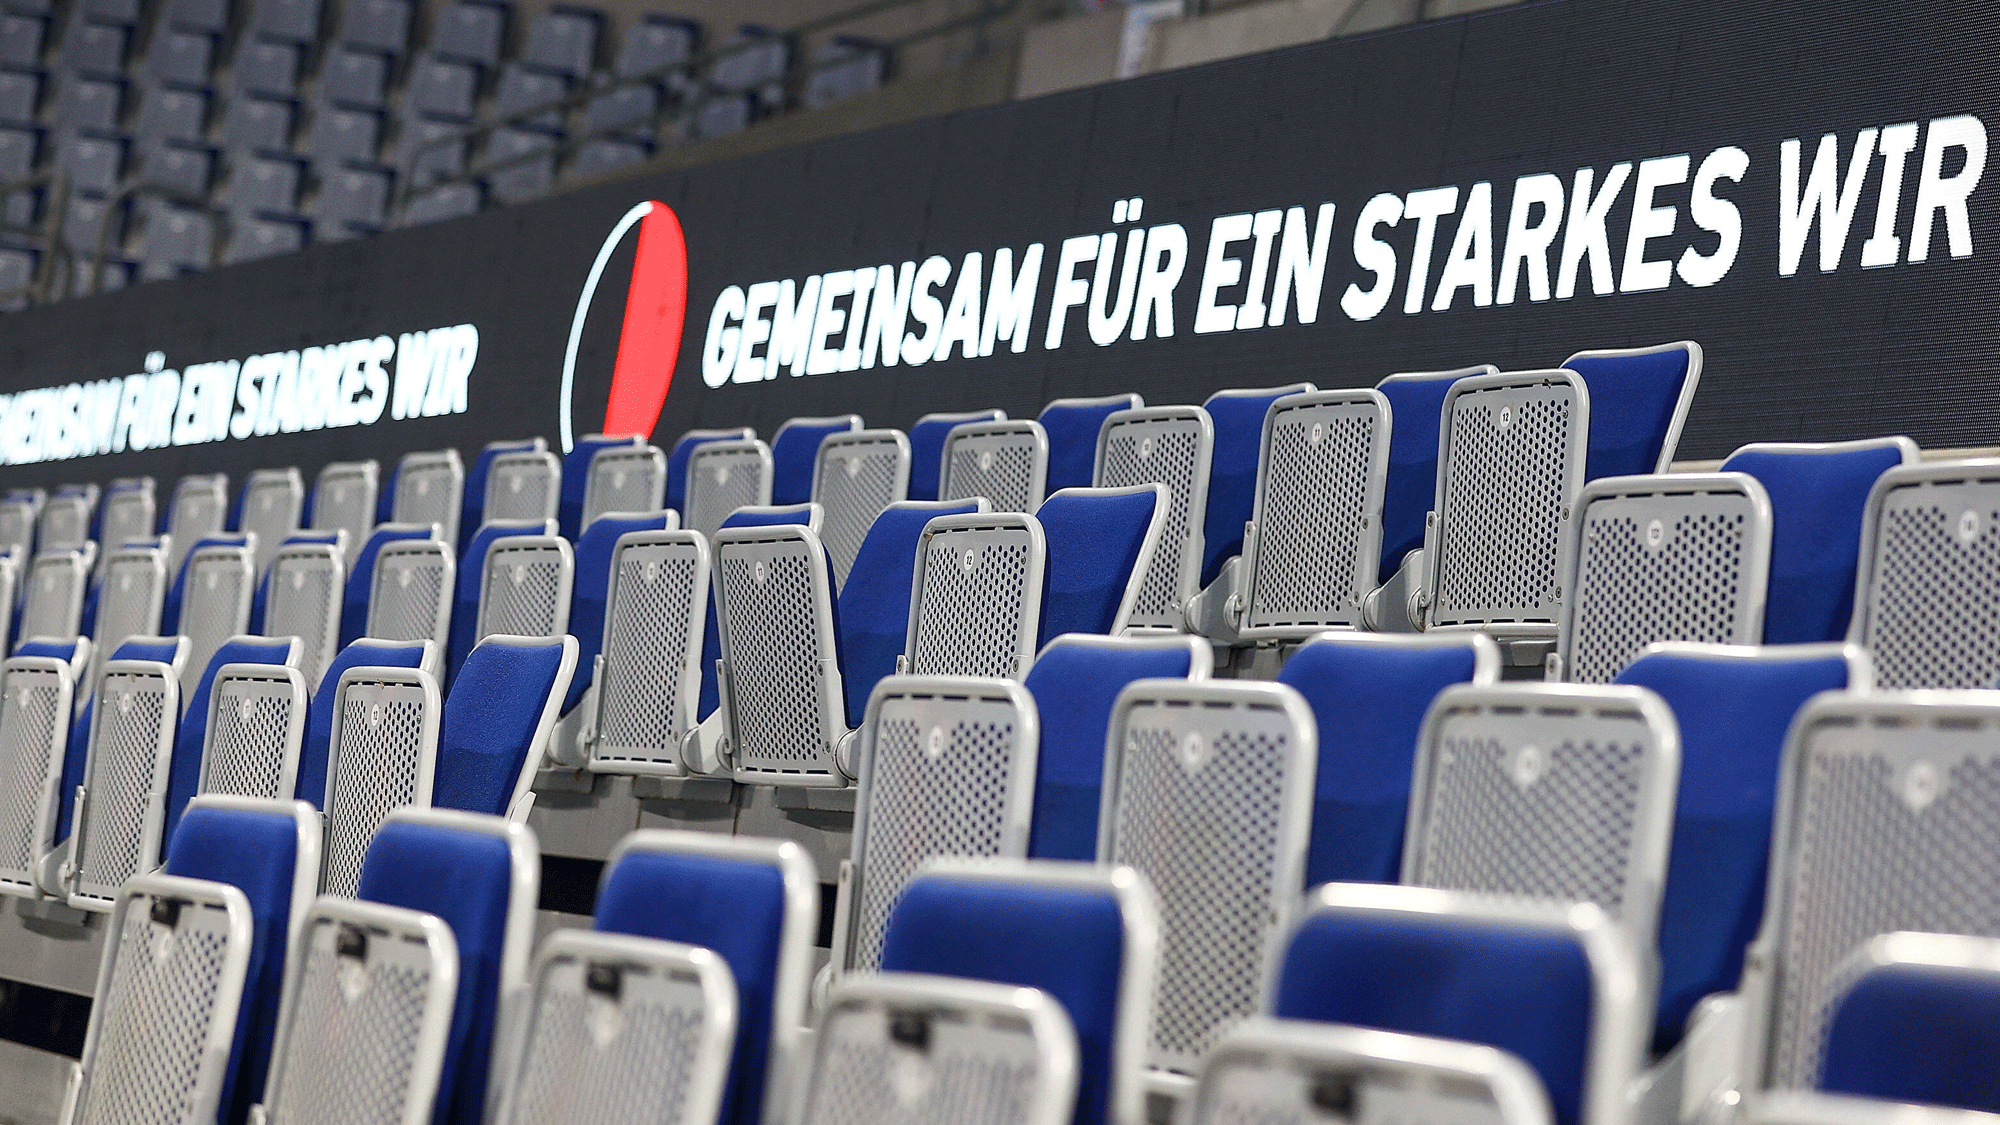 SAP Arena